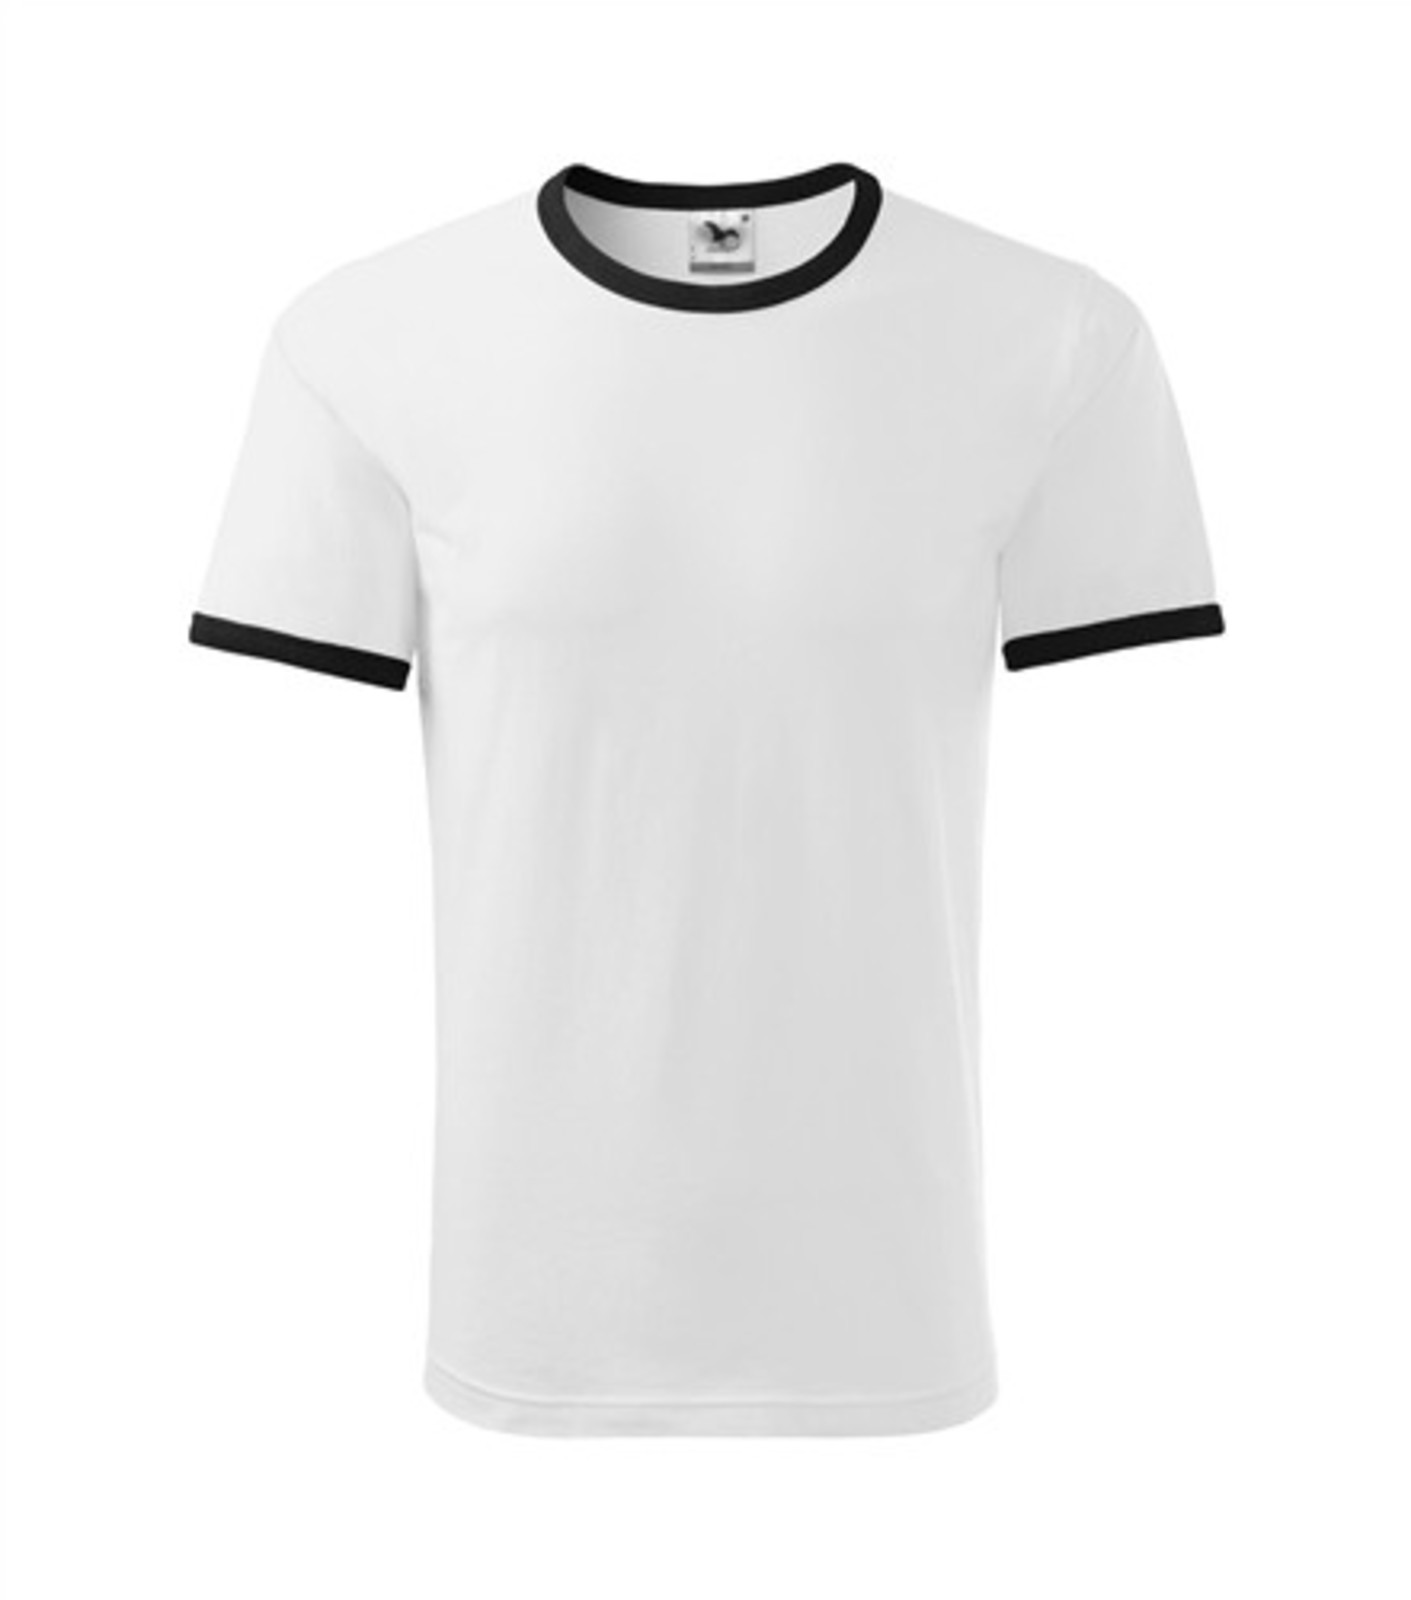 Unisex tričko Adler Infinity 131 - veľkosť: L, farba: biela/čierna